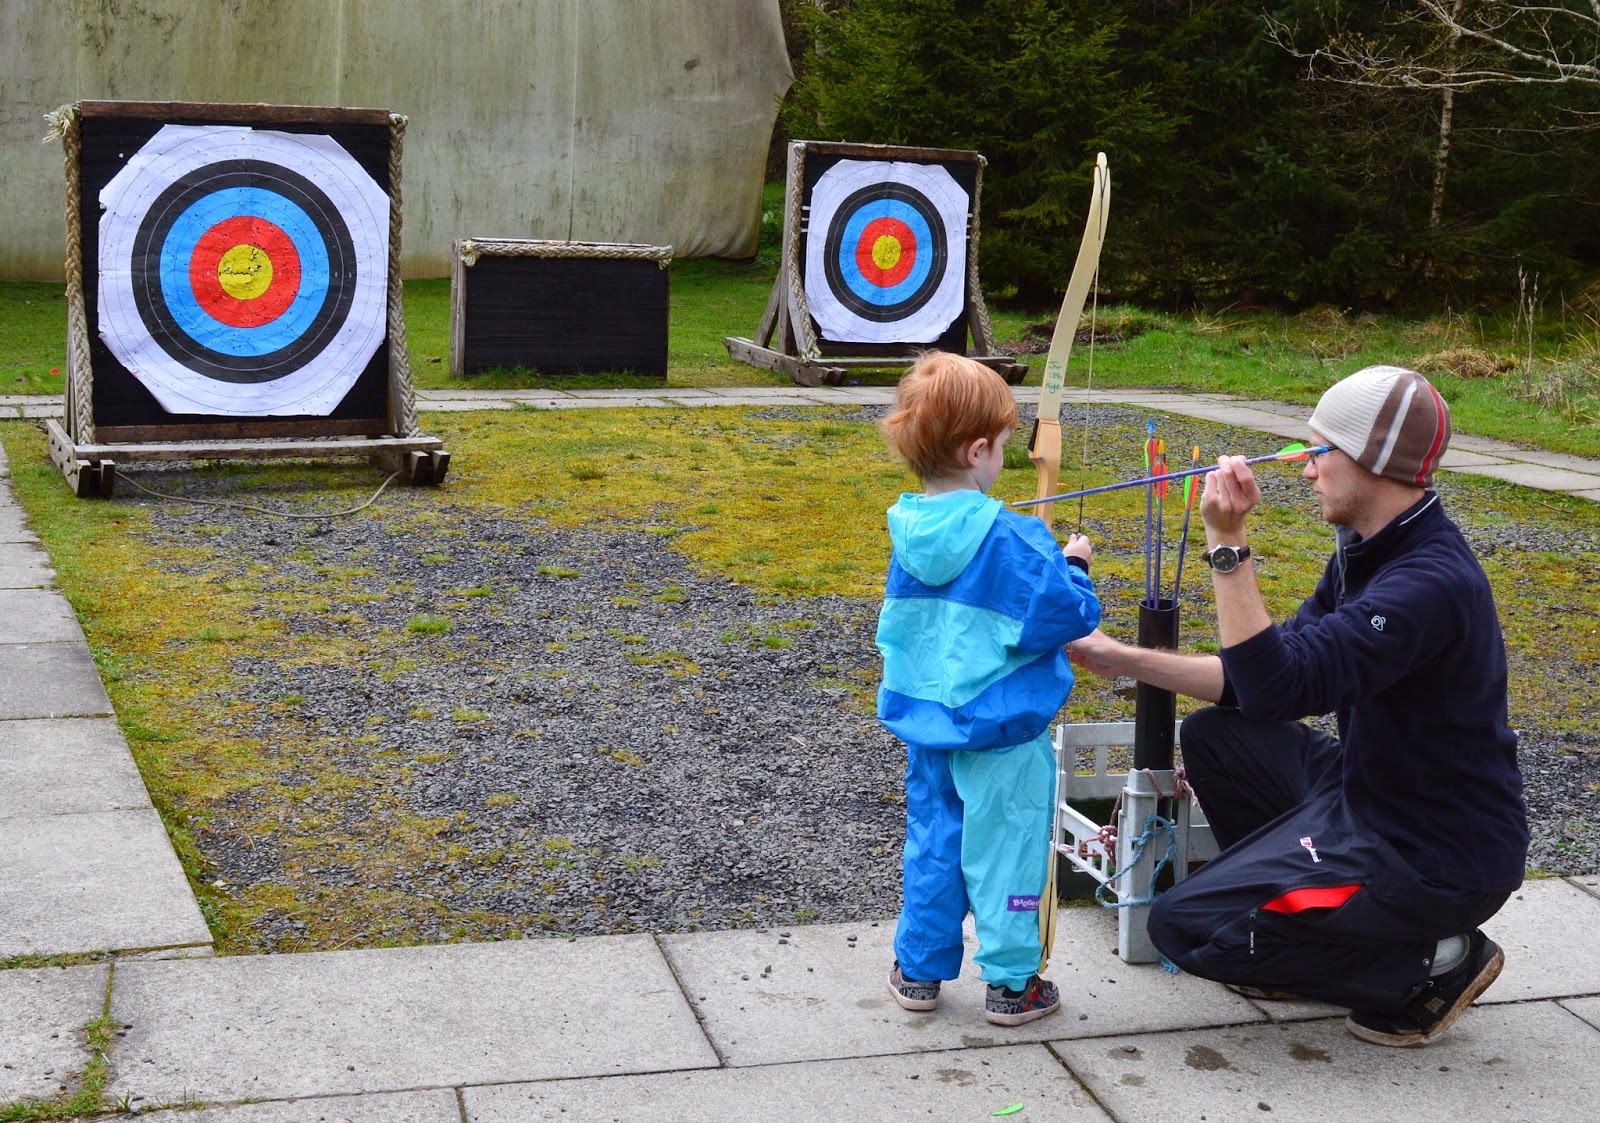 Archery at The Calvert Trust, Kielder - A review